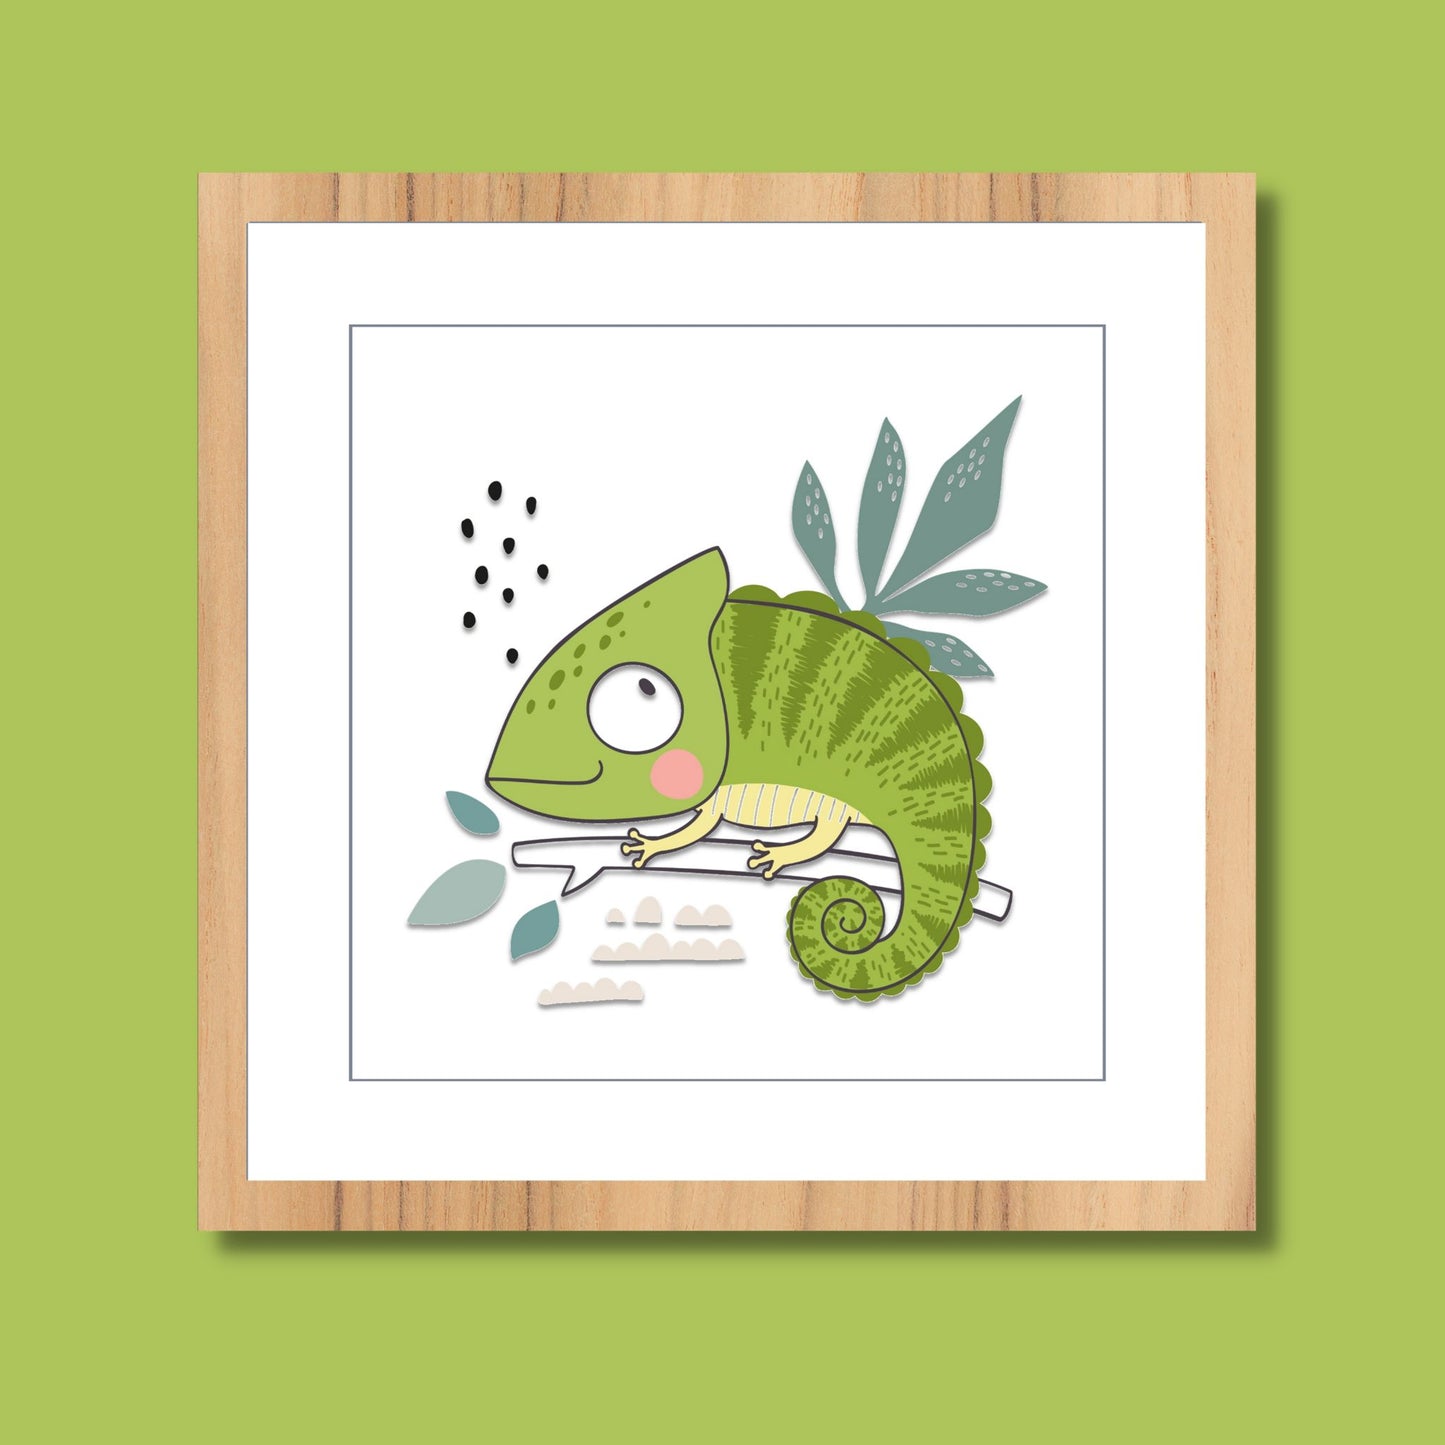 Koselig grafisk barneplakat med en søt, grønn gekko som sitter på en gren.